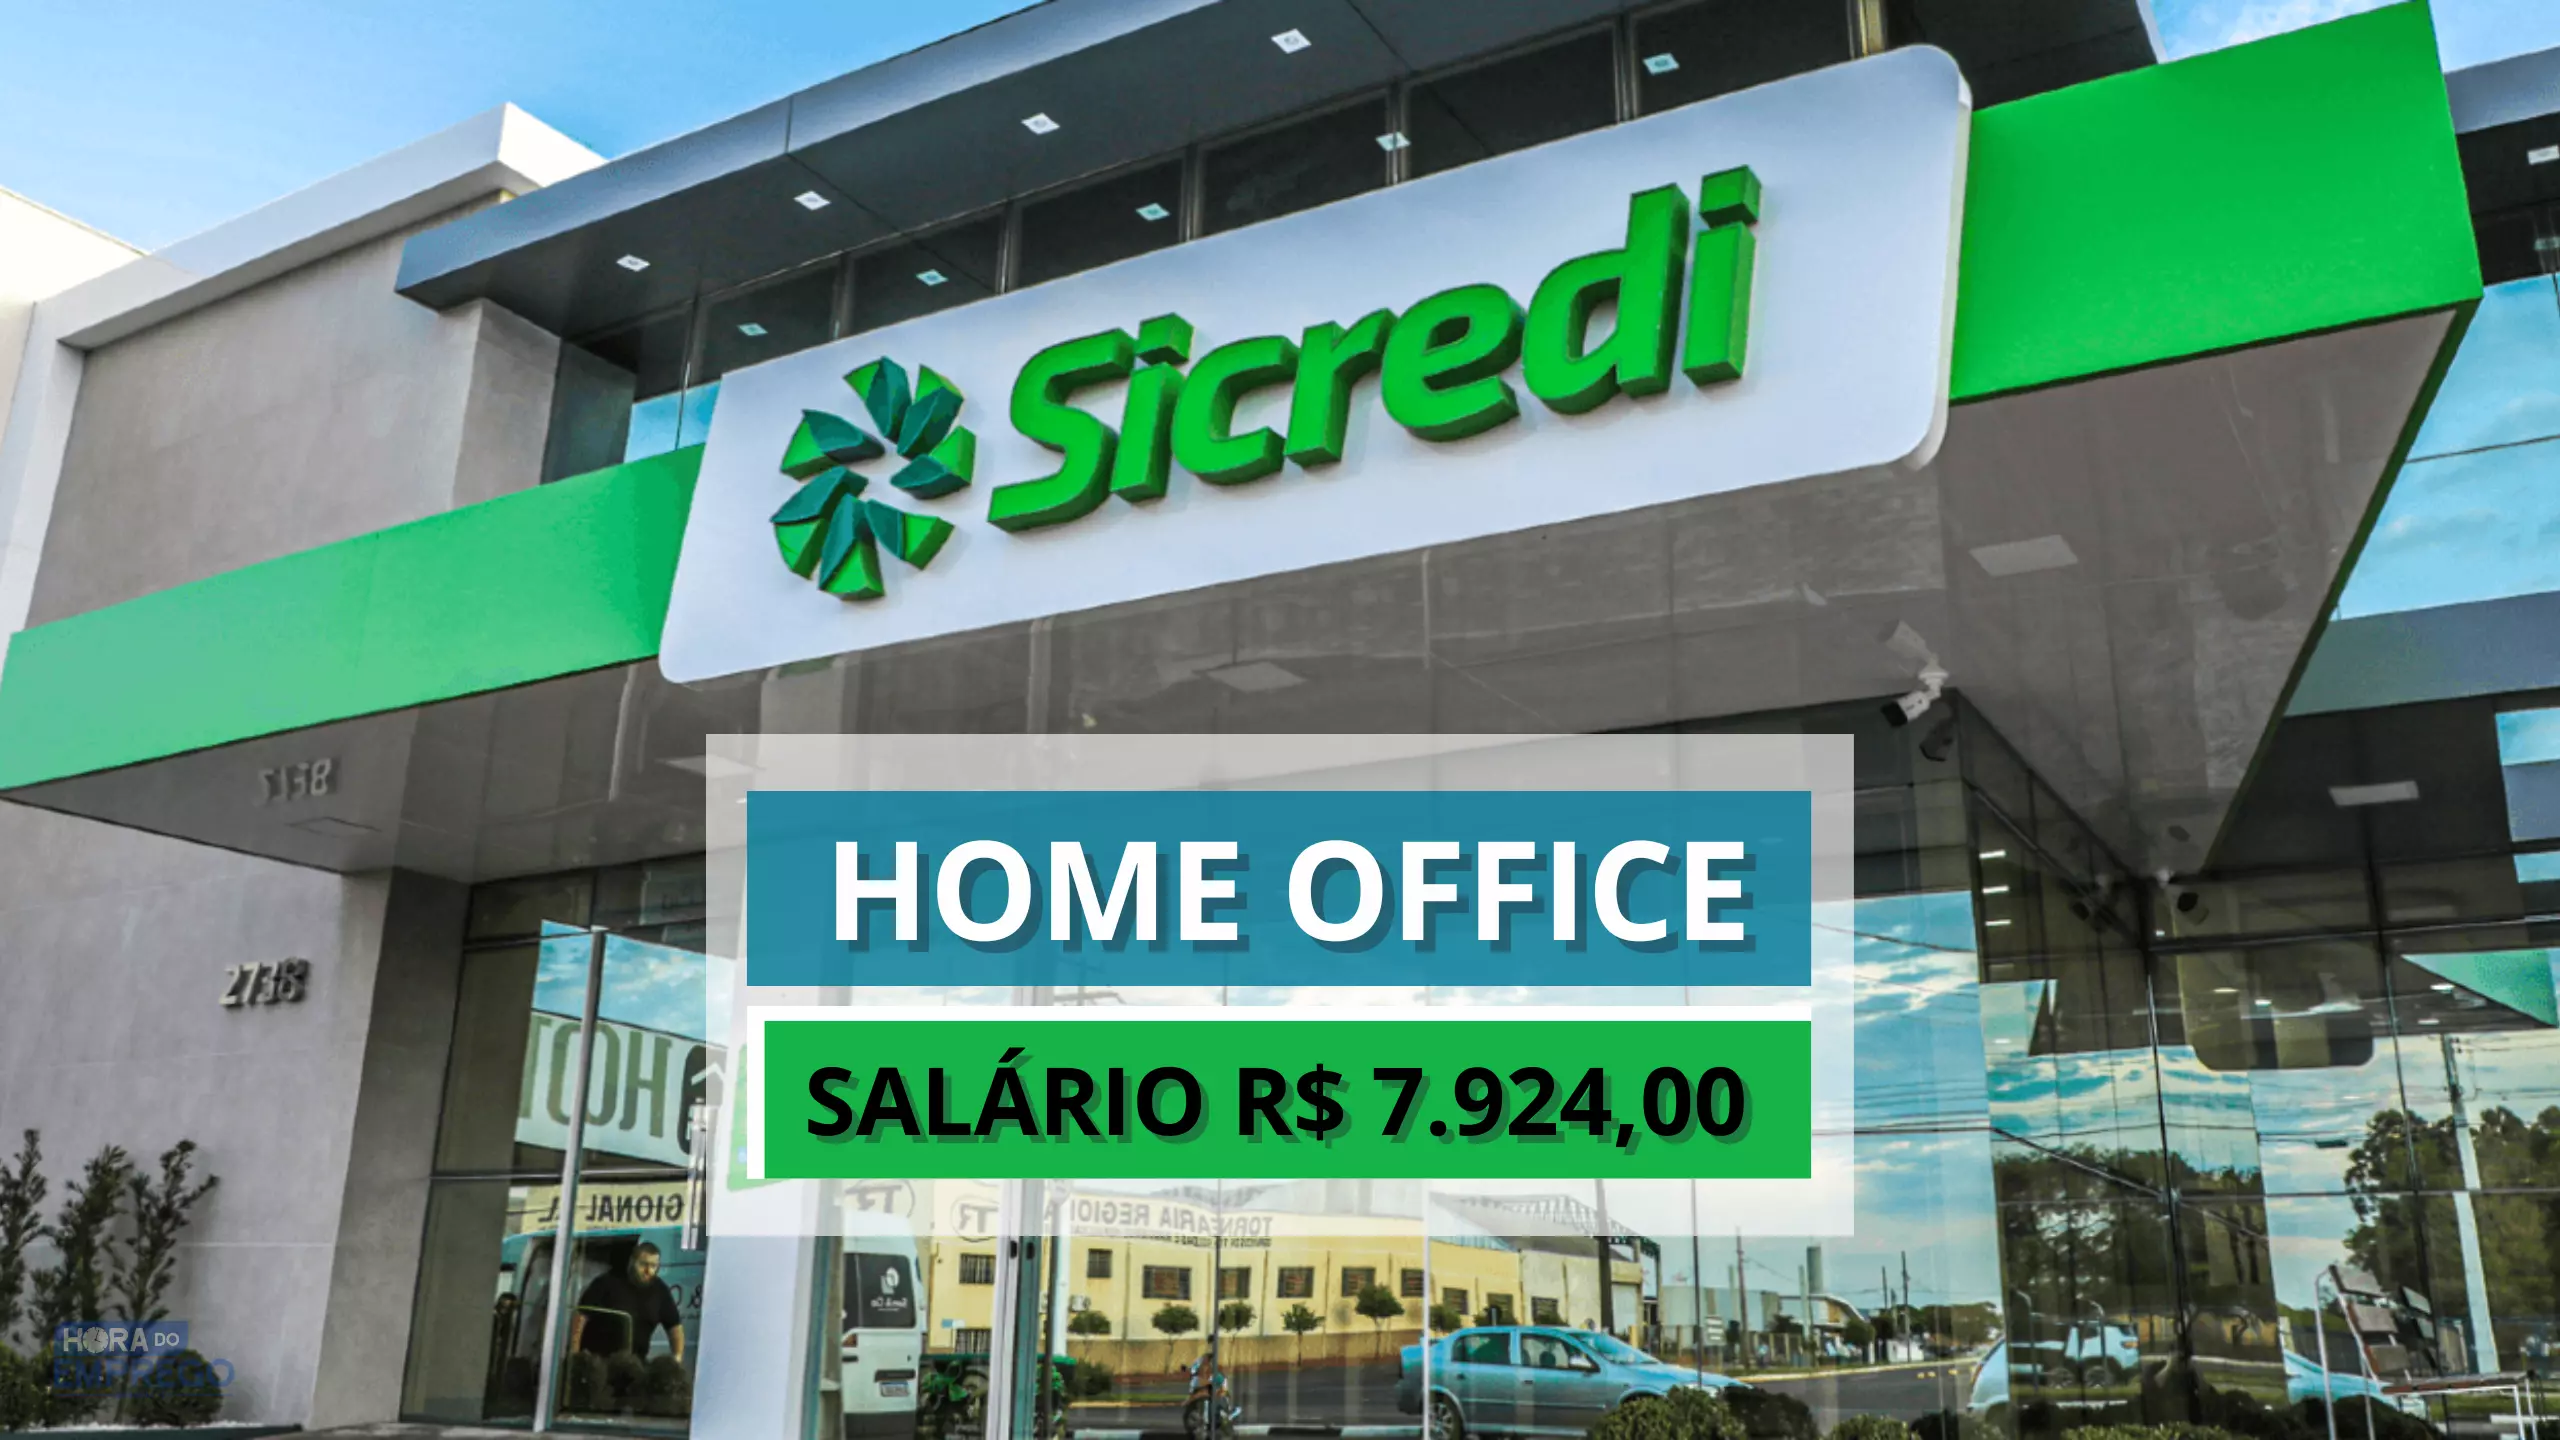 Sicredi anuncia vaga 100% HOME OFFICE com salário de R$ 7.924,00 entre os benefícios tem 14º e 15º salários fixos